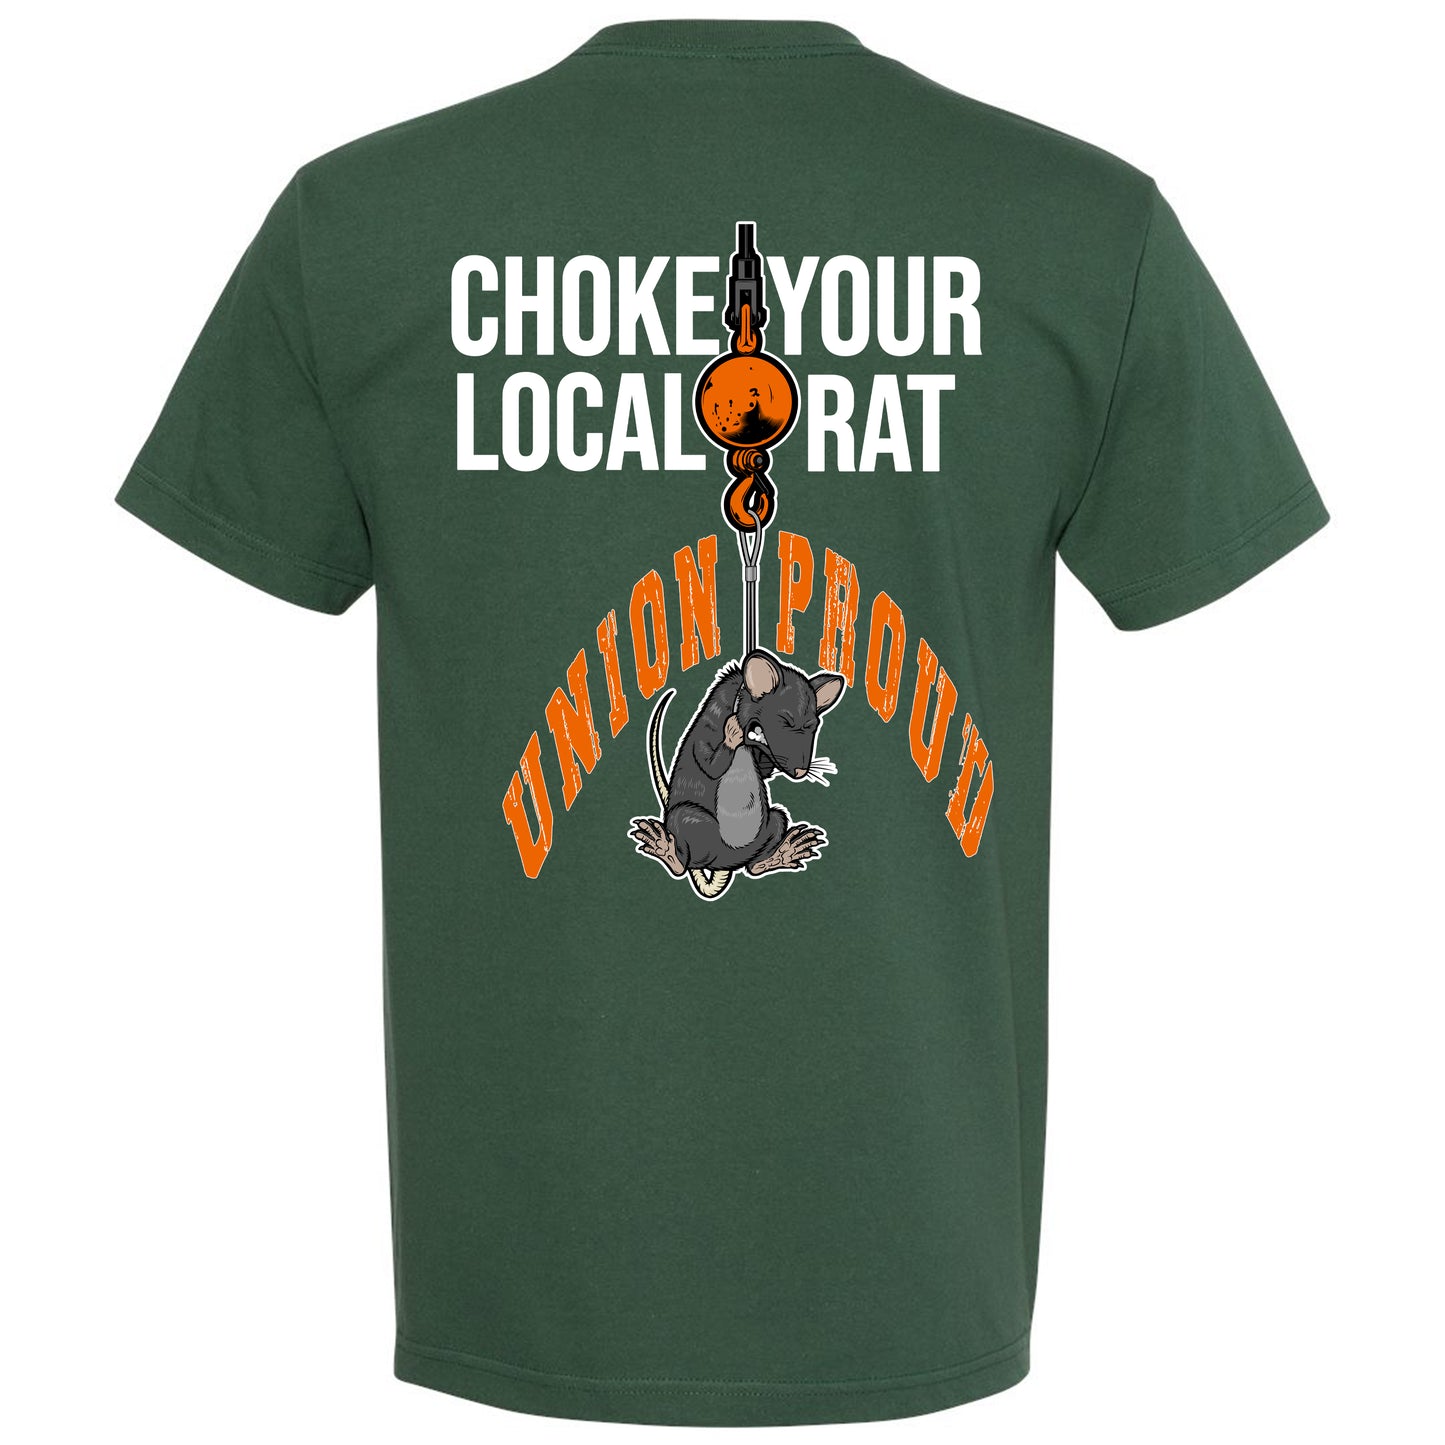 CHOKE YOUR LOCAL RAT T-SHIRT